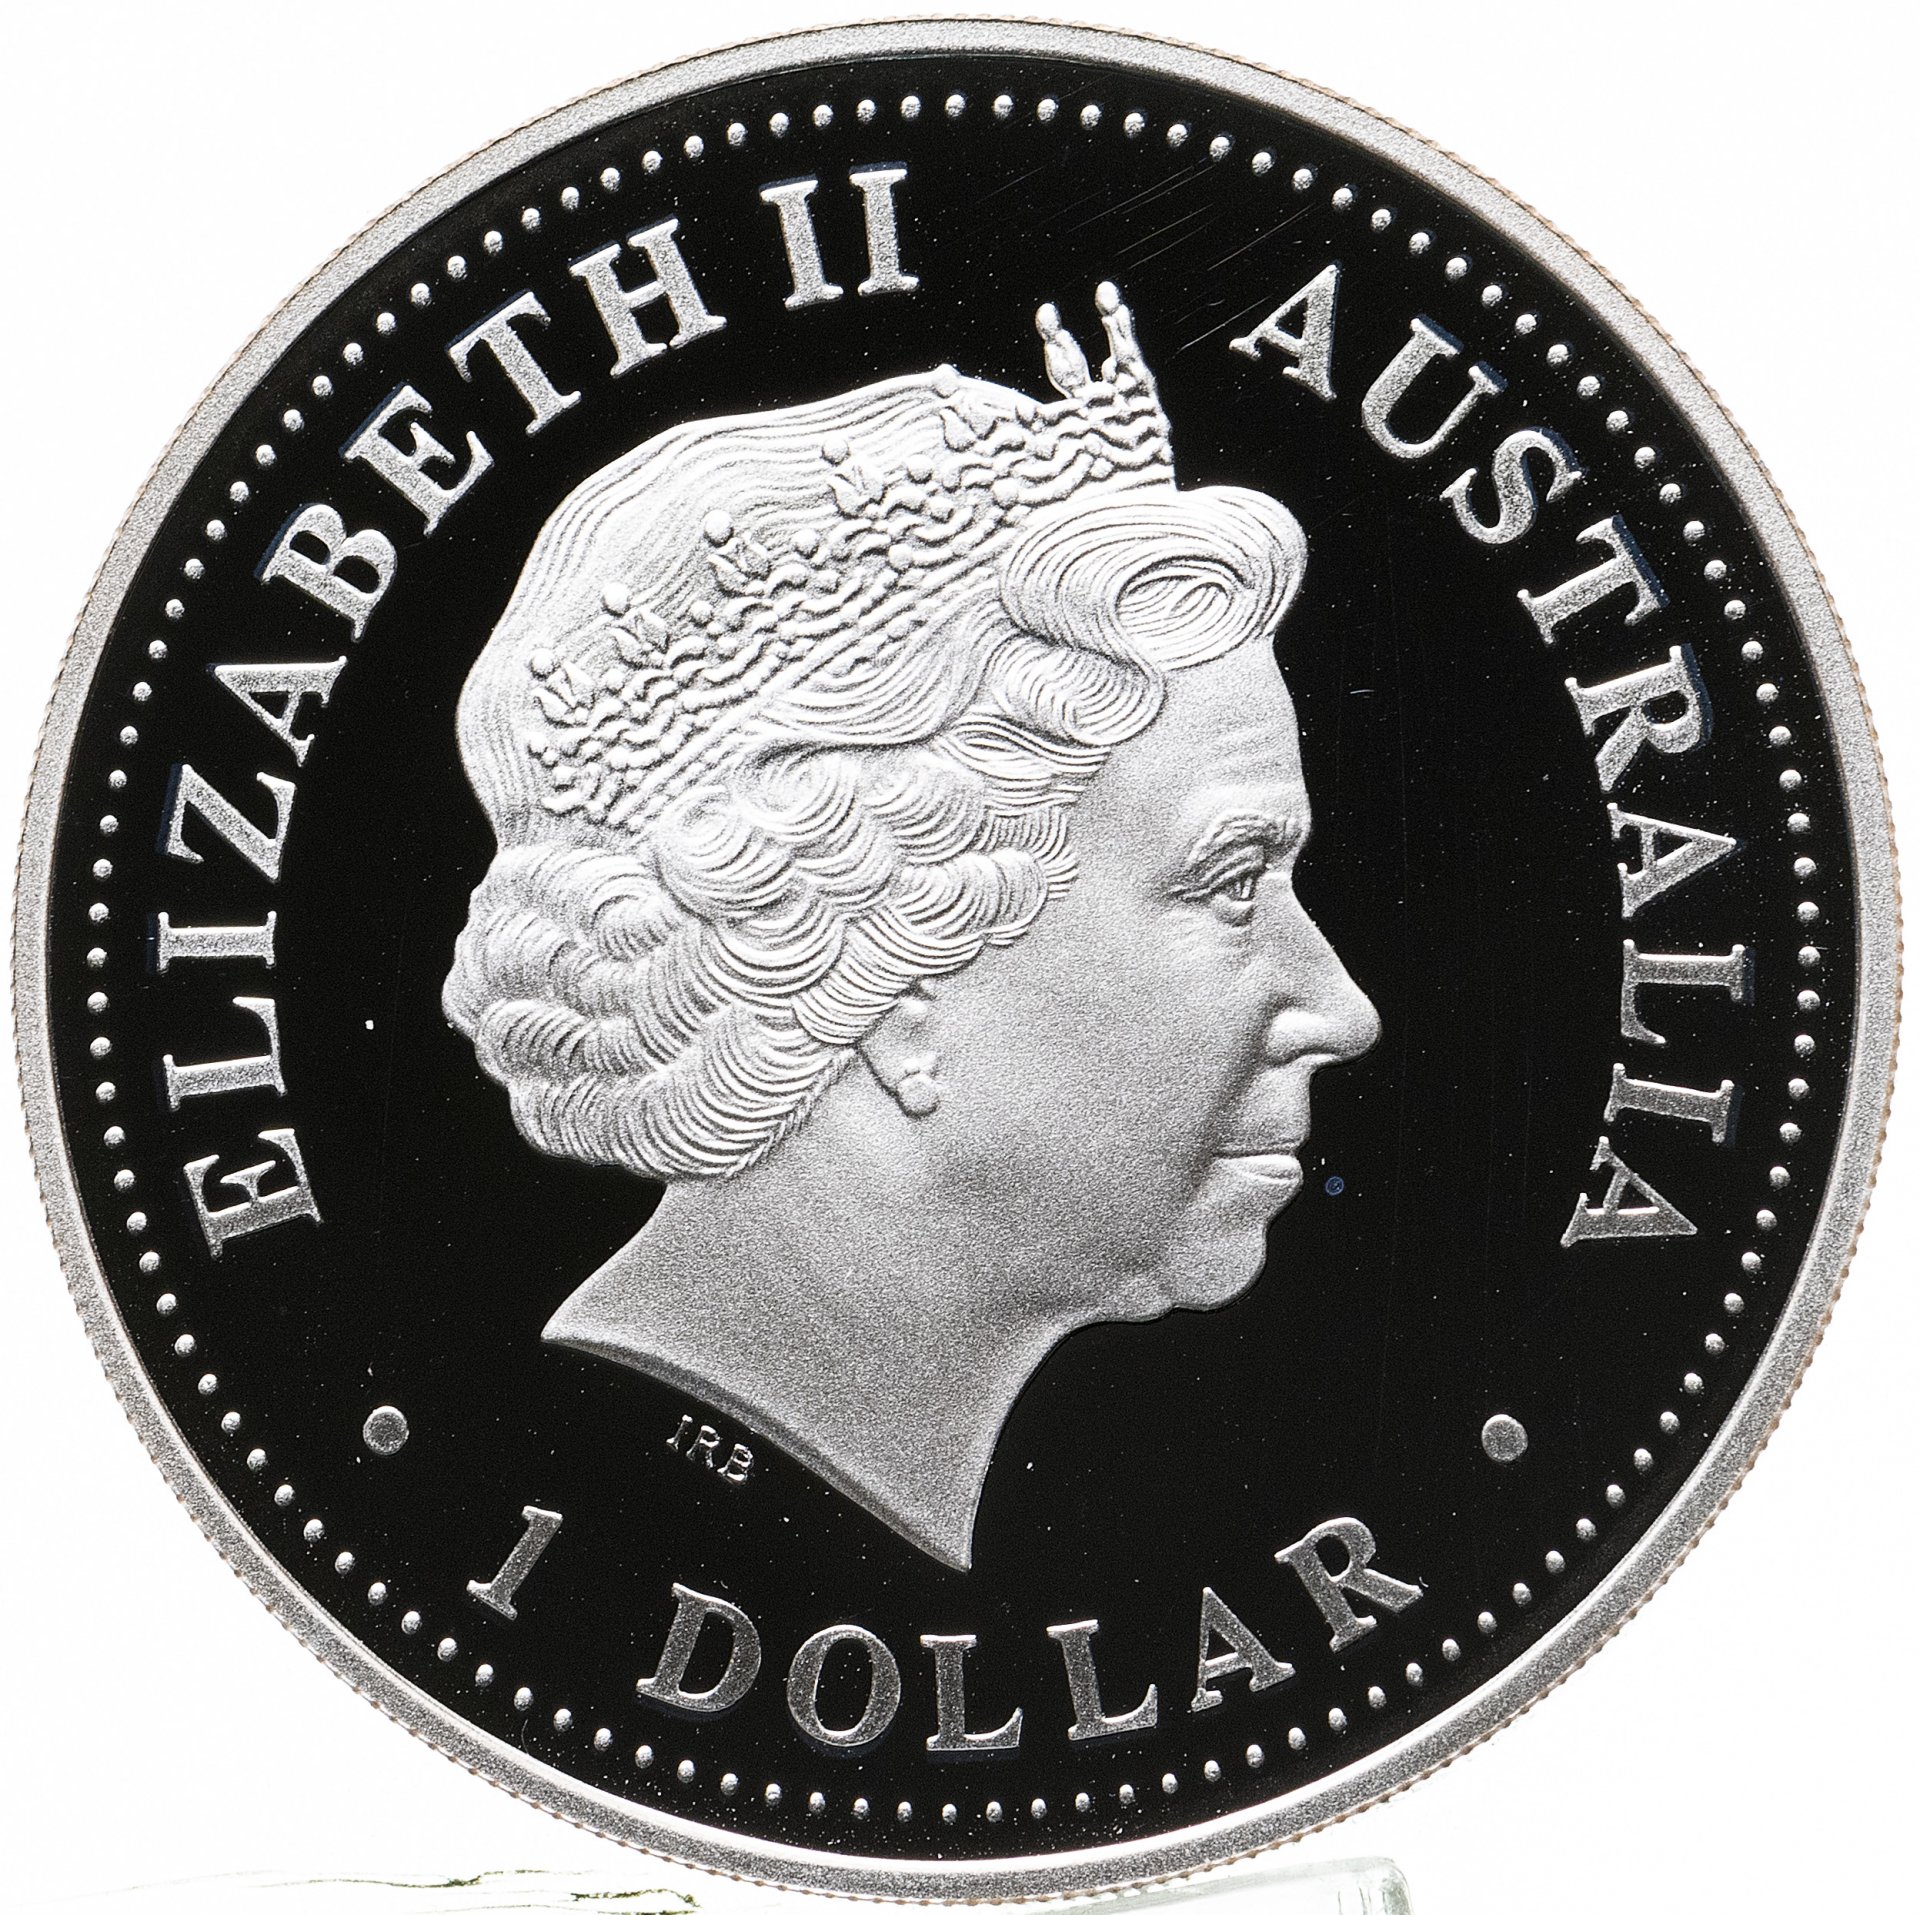 Монета австралия 1 доллар. 1 Доллар. Австралийские монеты. Австралия 1 доллар 2005. 1 Доллар фото.